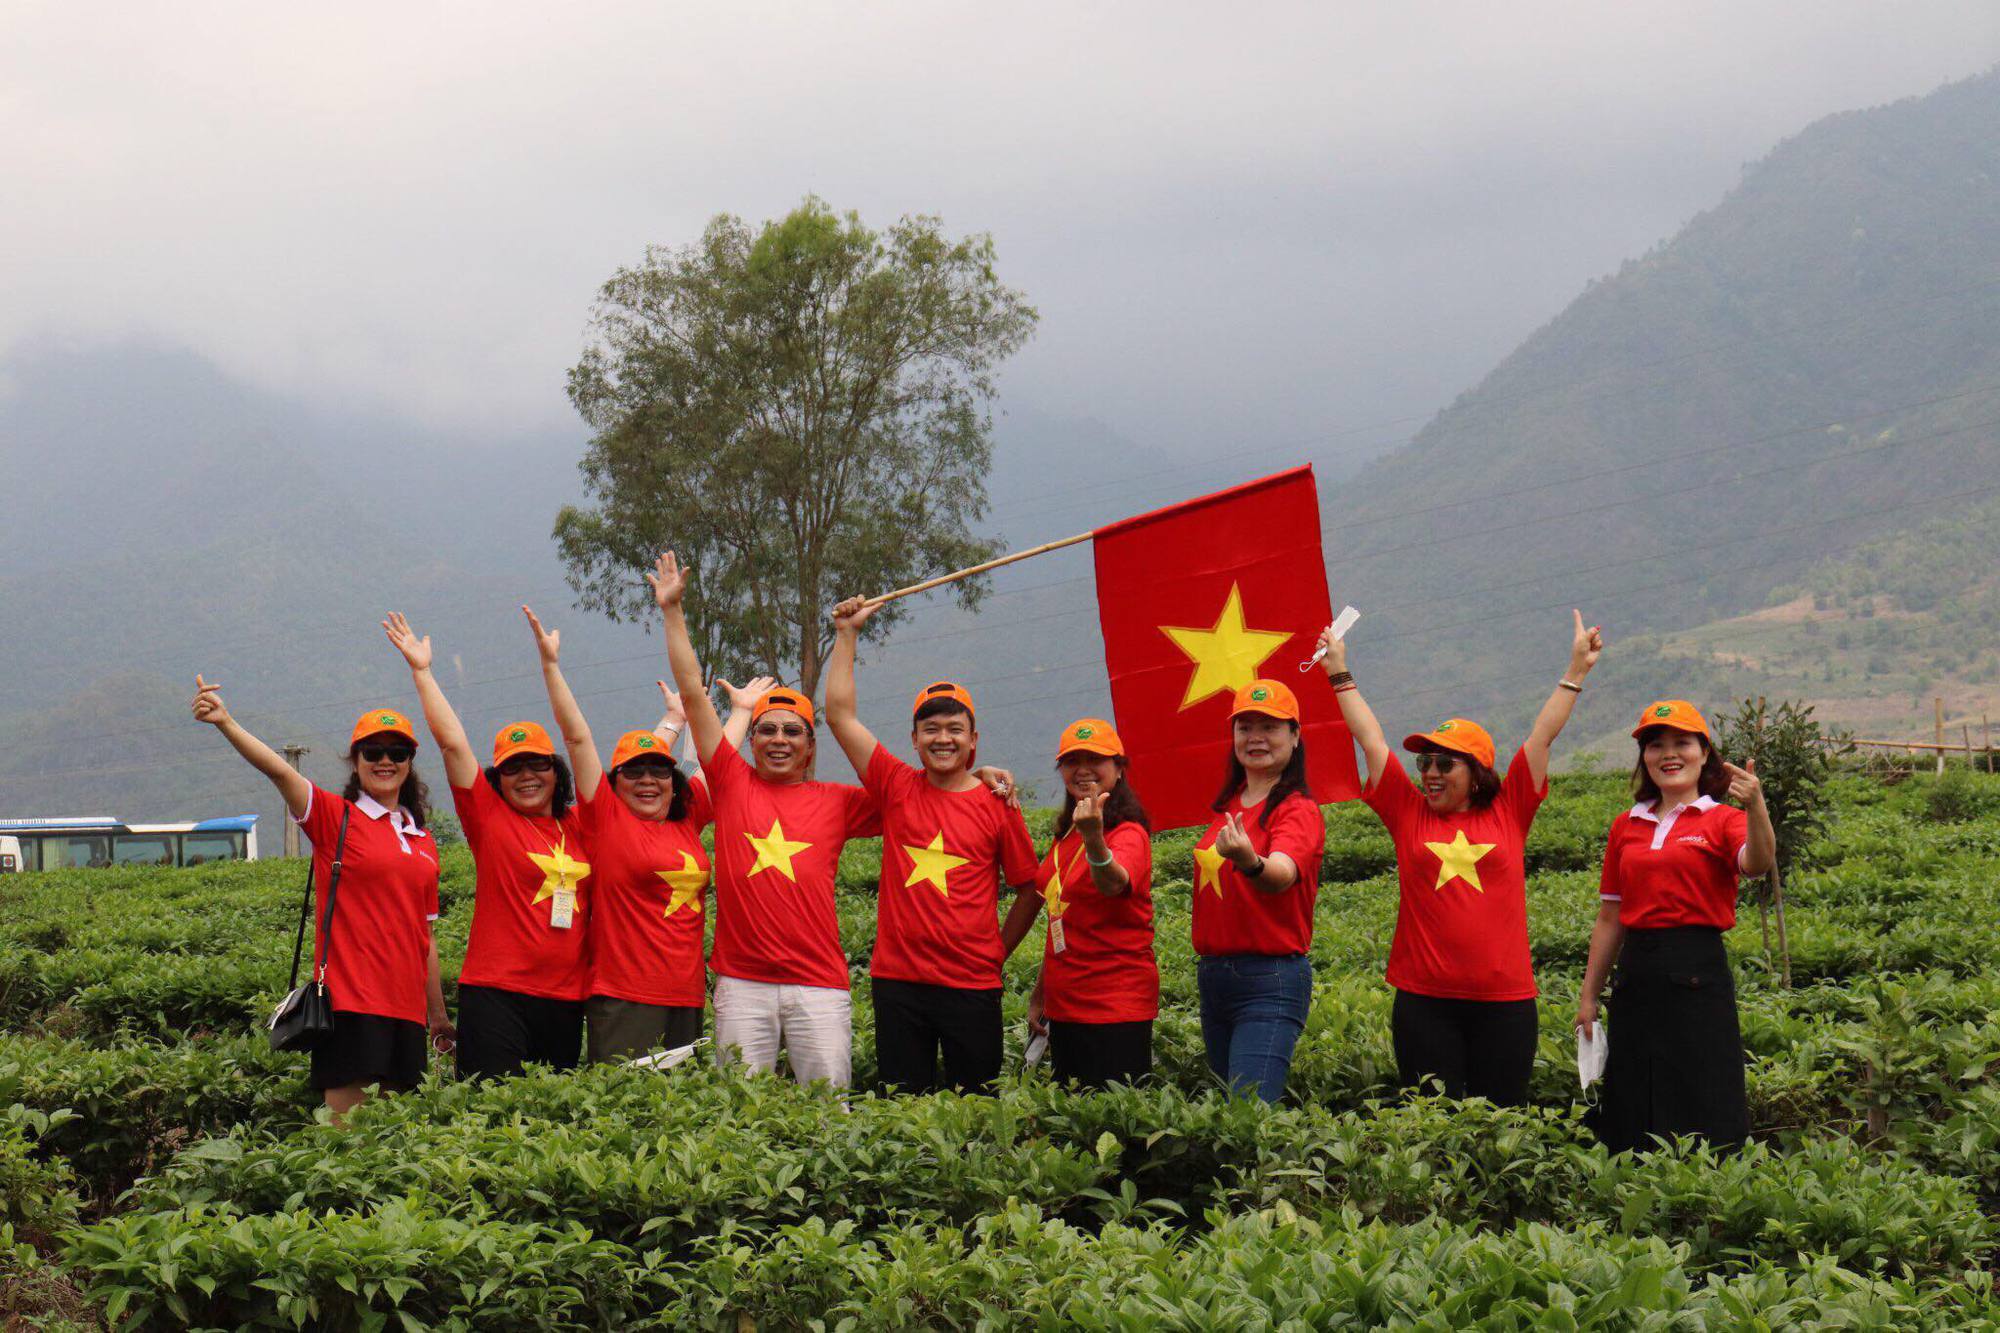 Du lịch xanh văn hóa bền vững đang là xu hướng phát triển mới của ngành du lịch Việt Nam. Không chỉ mang lại lợi ích kinh tế cho địa phương và cộng đồng, du lịch xanh văn hóa bền vững còn giúp bảo tồn và phát huy giá trị văn hóa, thiên nhiên của đất nước. Hãy xem hình ảnh liên quan đến du lịch xanh và bền vững để cảm nhận sự đặc biệt và thư thái của những điểm đến này.